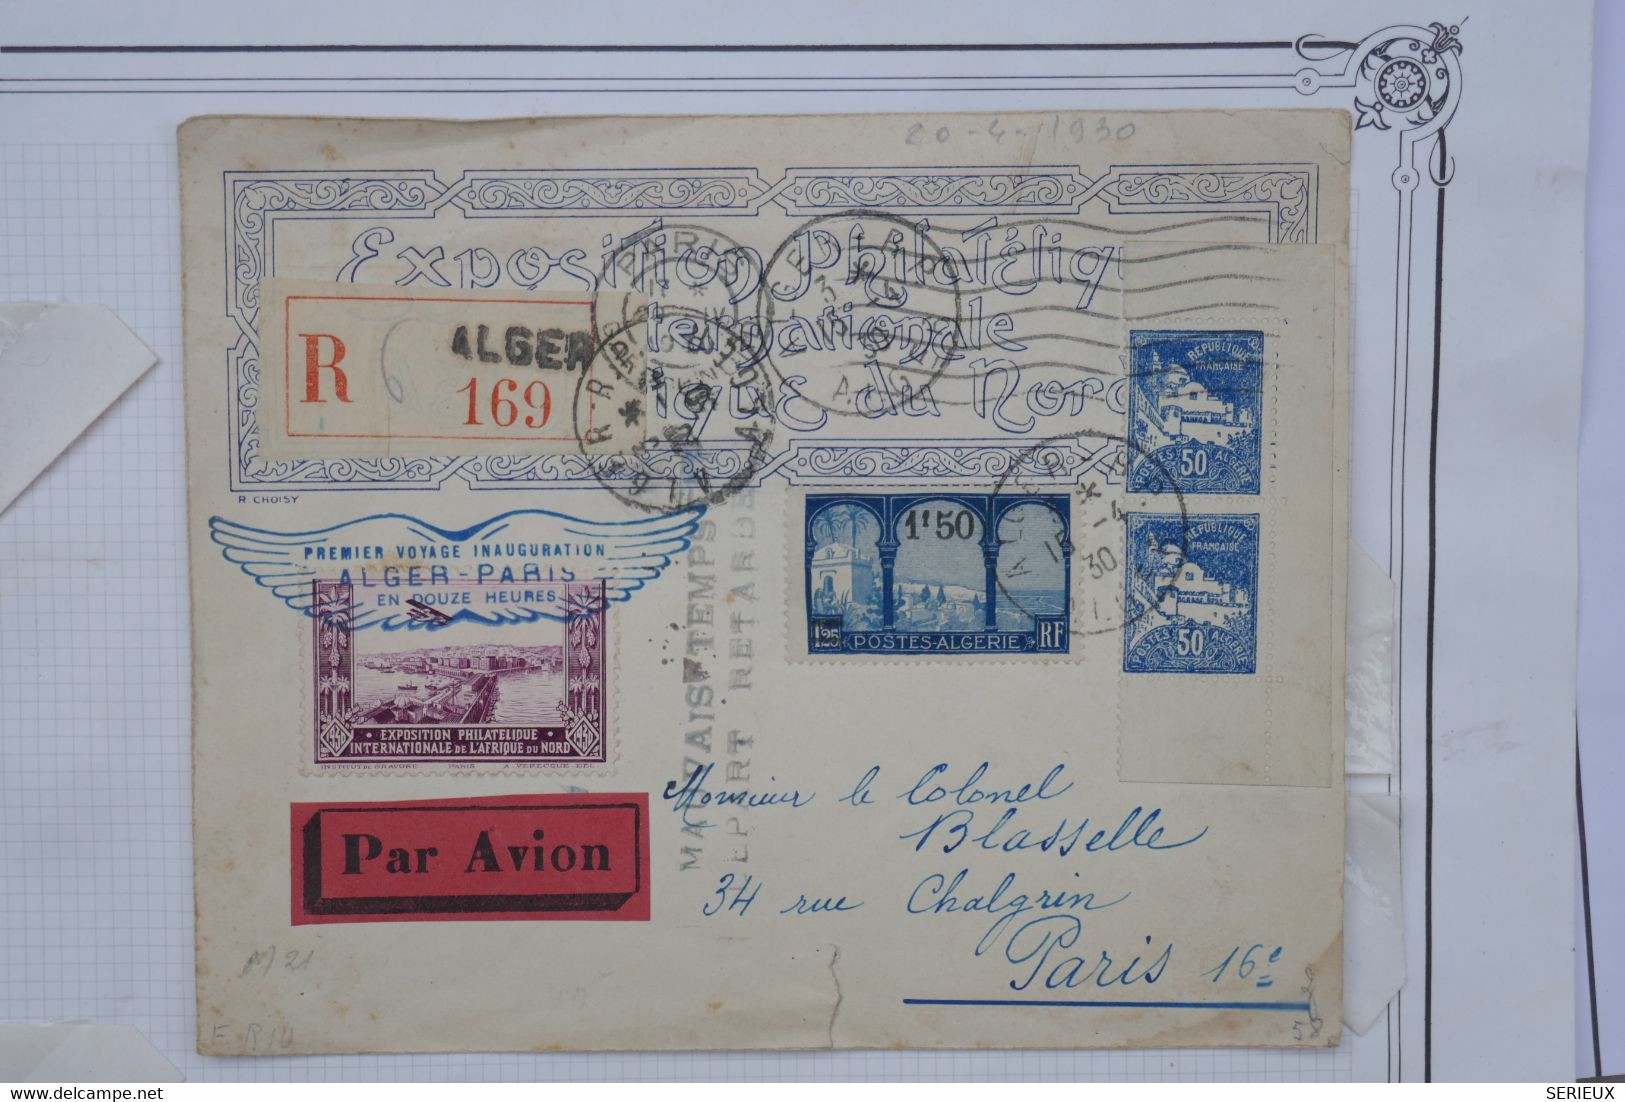 AU10 ALGERIE FRANCE BELLE LETTRE RARE 1930 IER VOL  ALGER PARIS +MAUVAIS TEMPS DEPART RETARDé +AFFRANCH. PLAISANT - Airmail